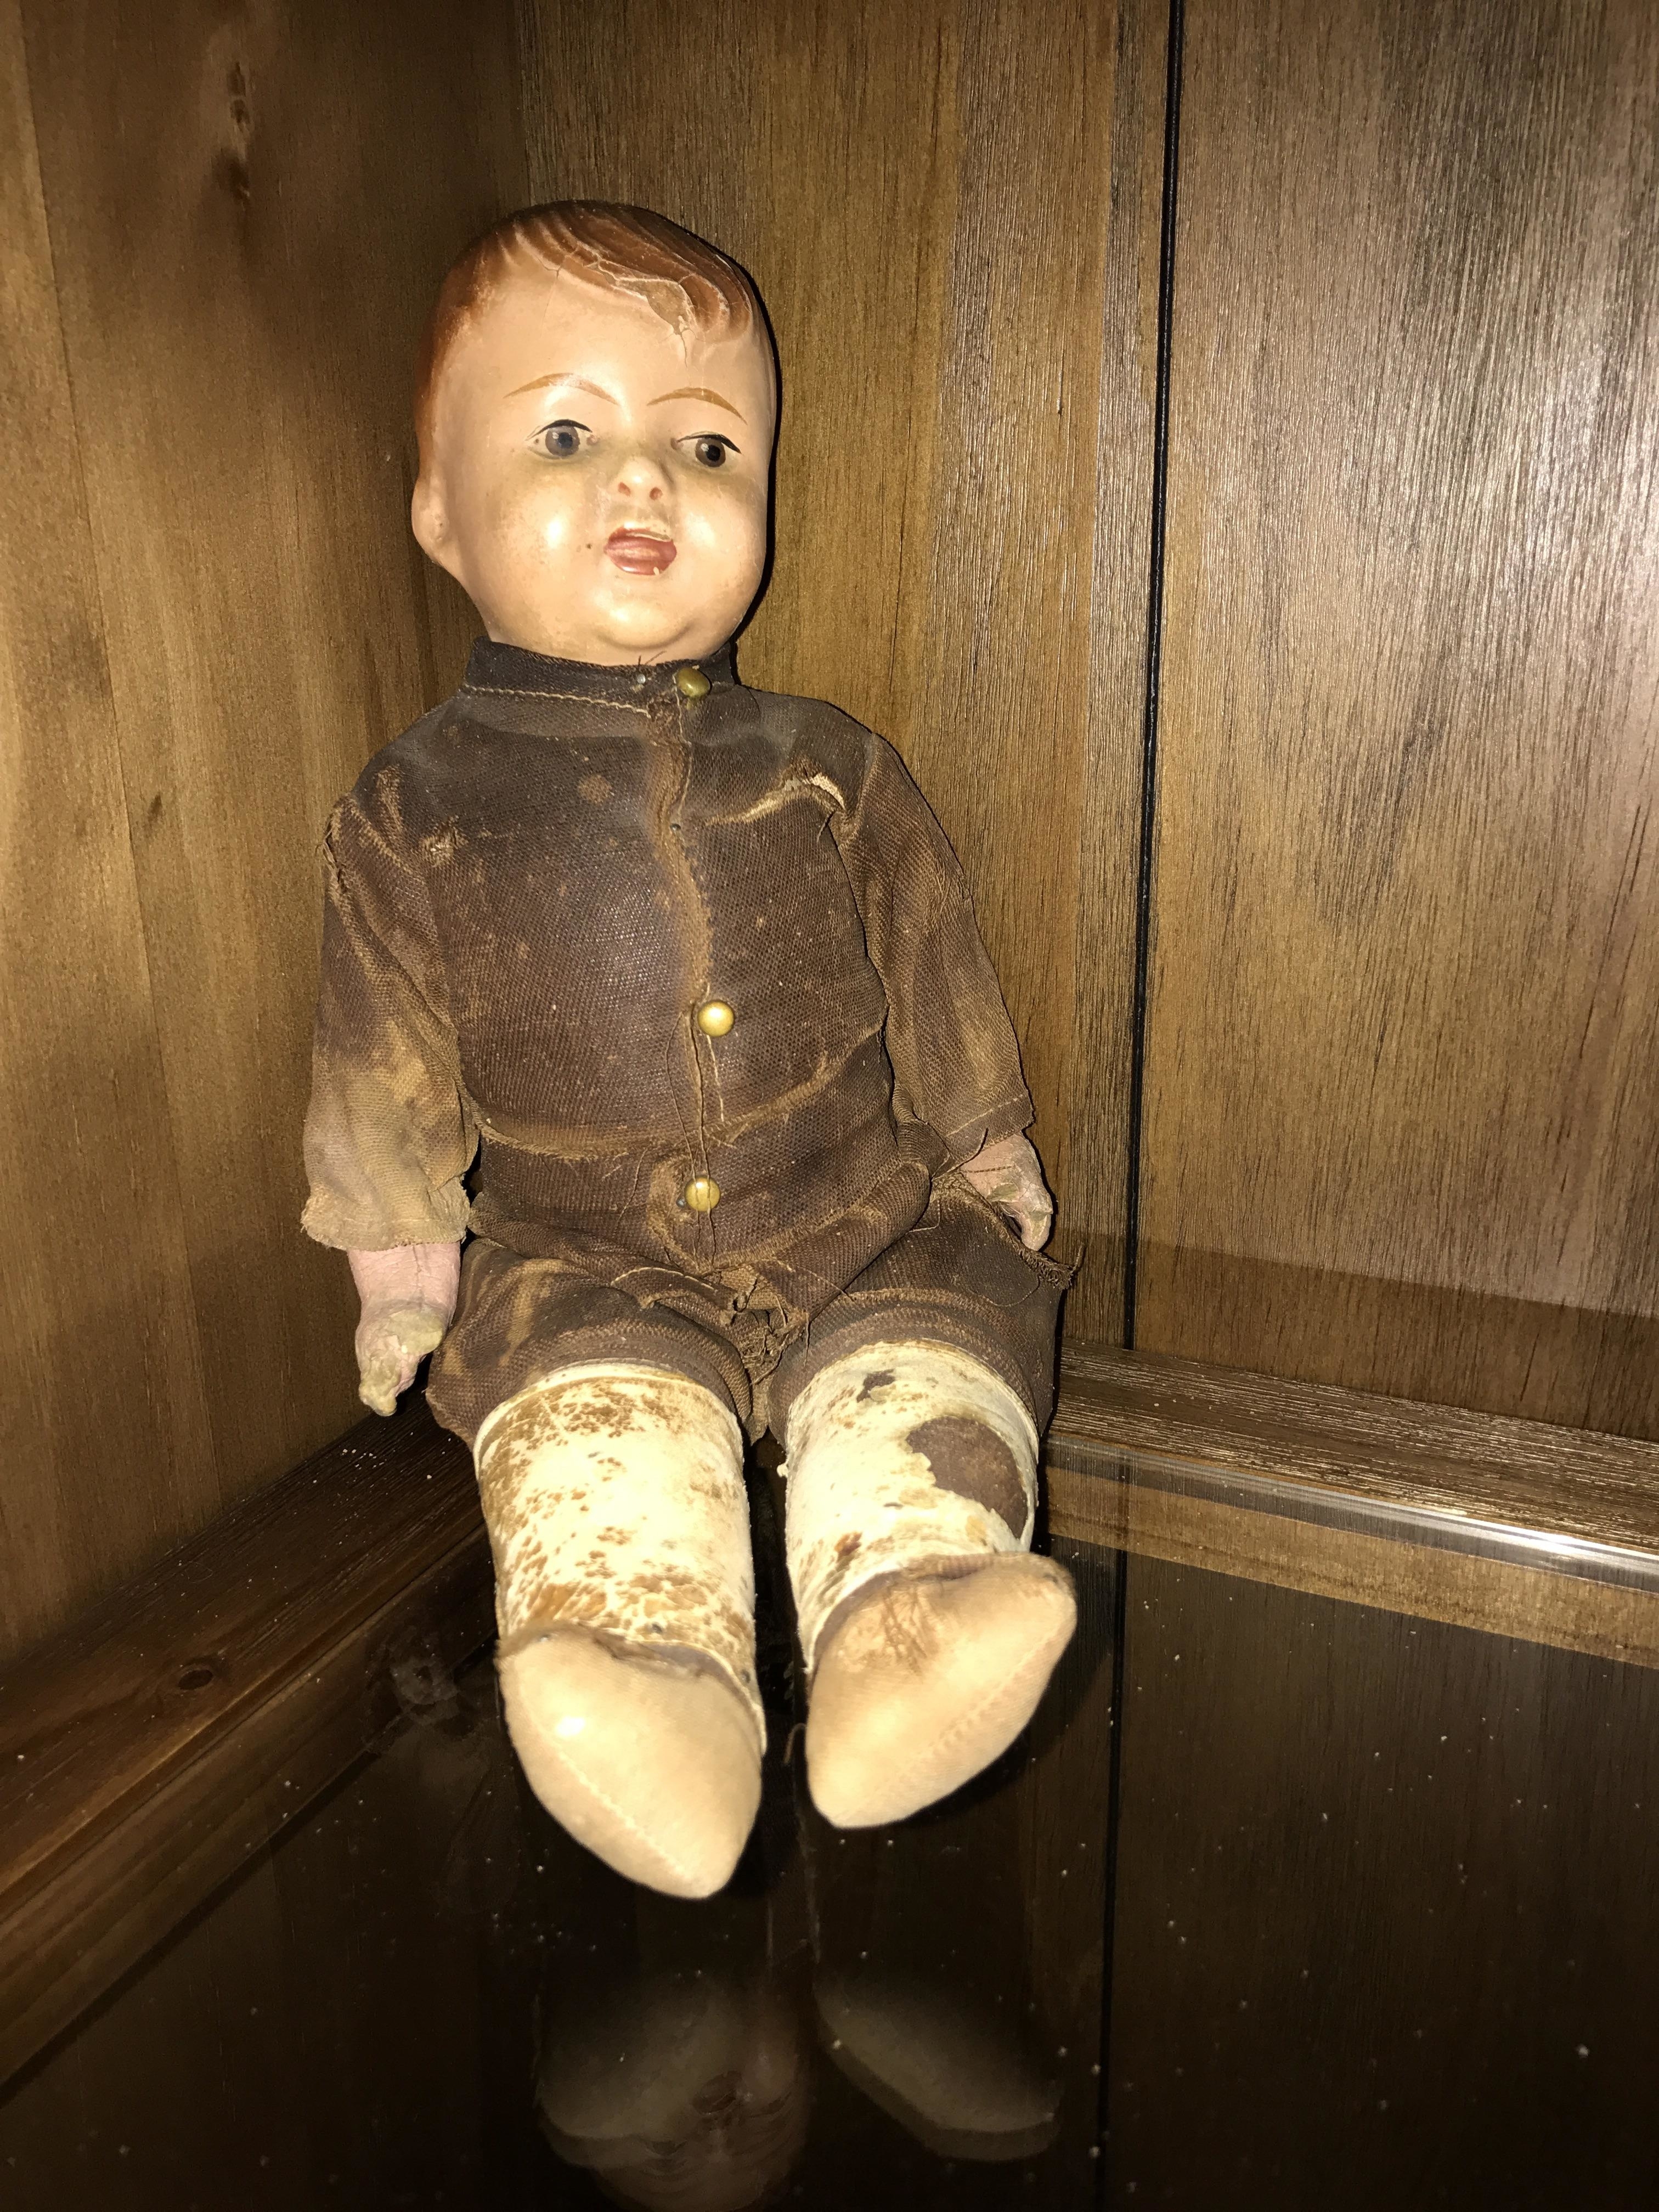 A creepy old doll sitting on a shelf